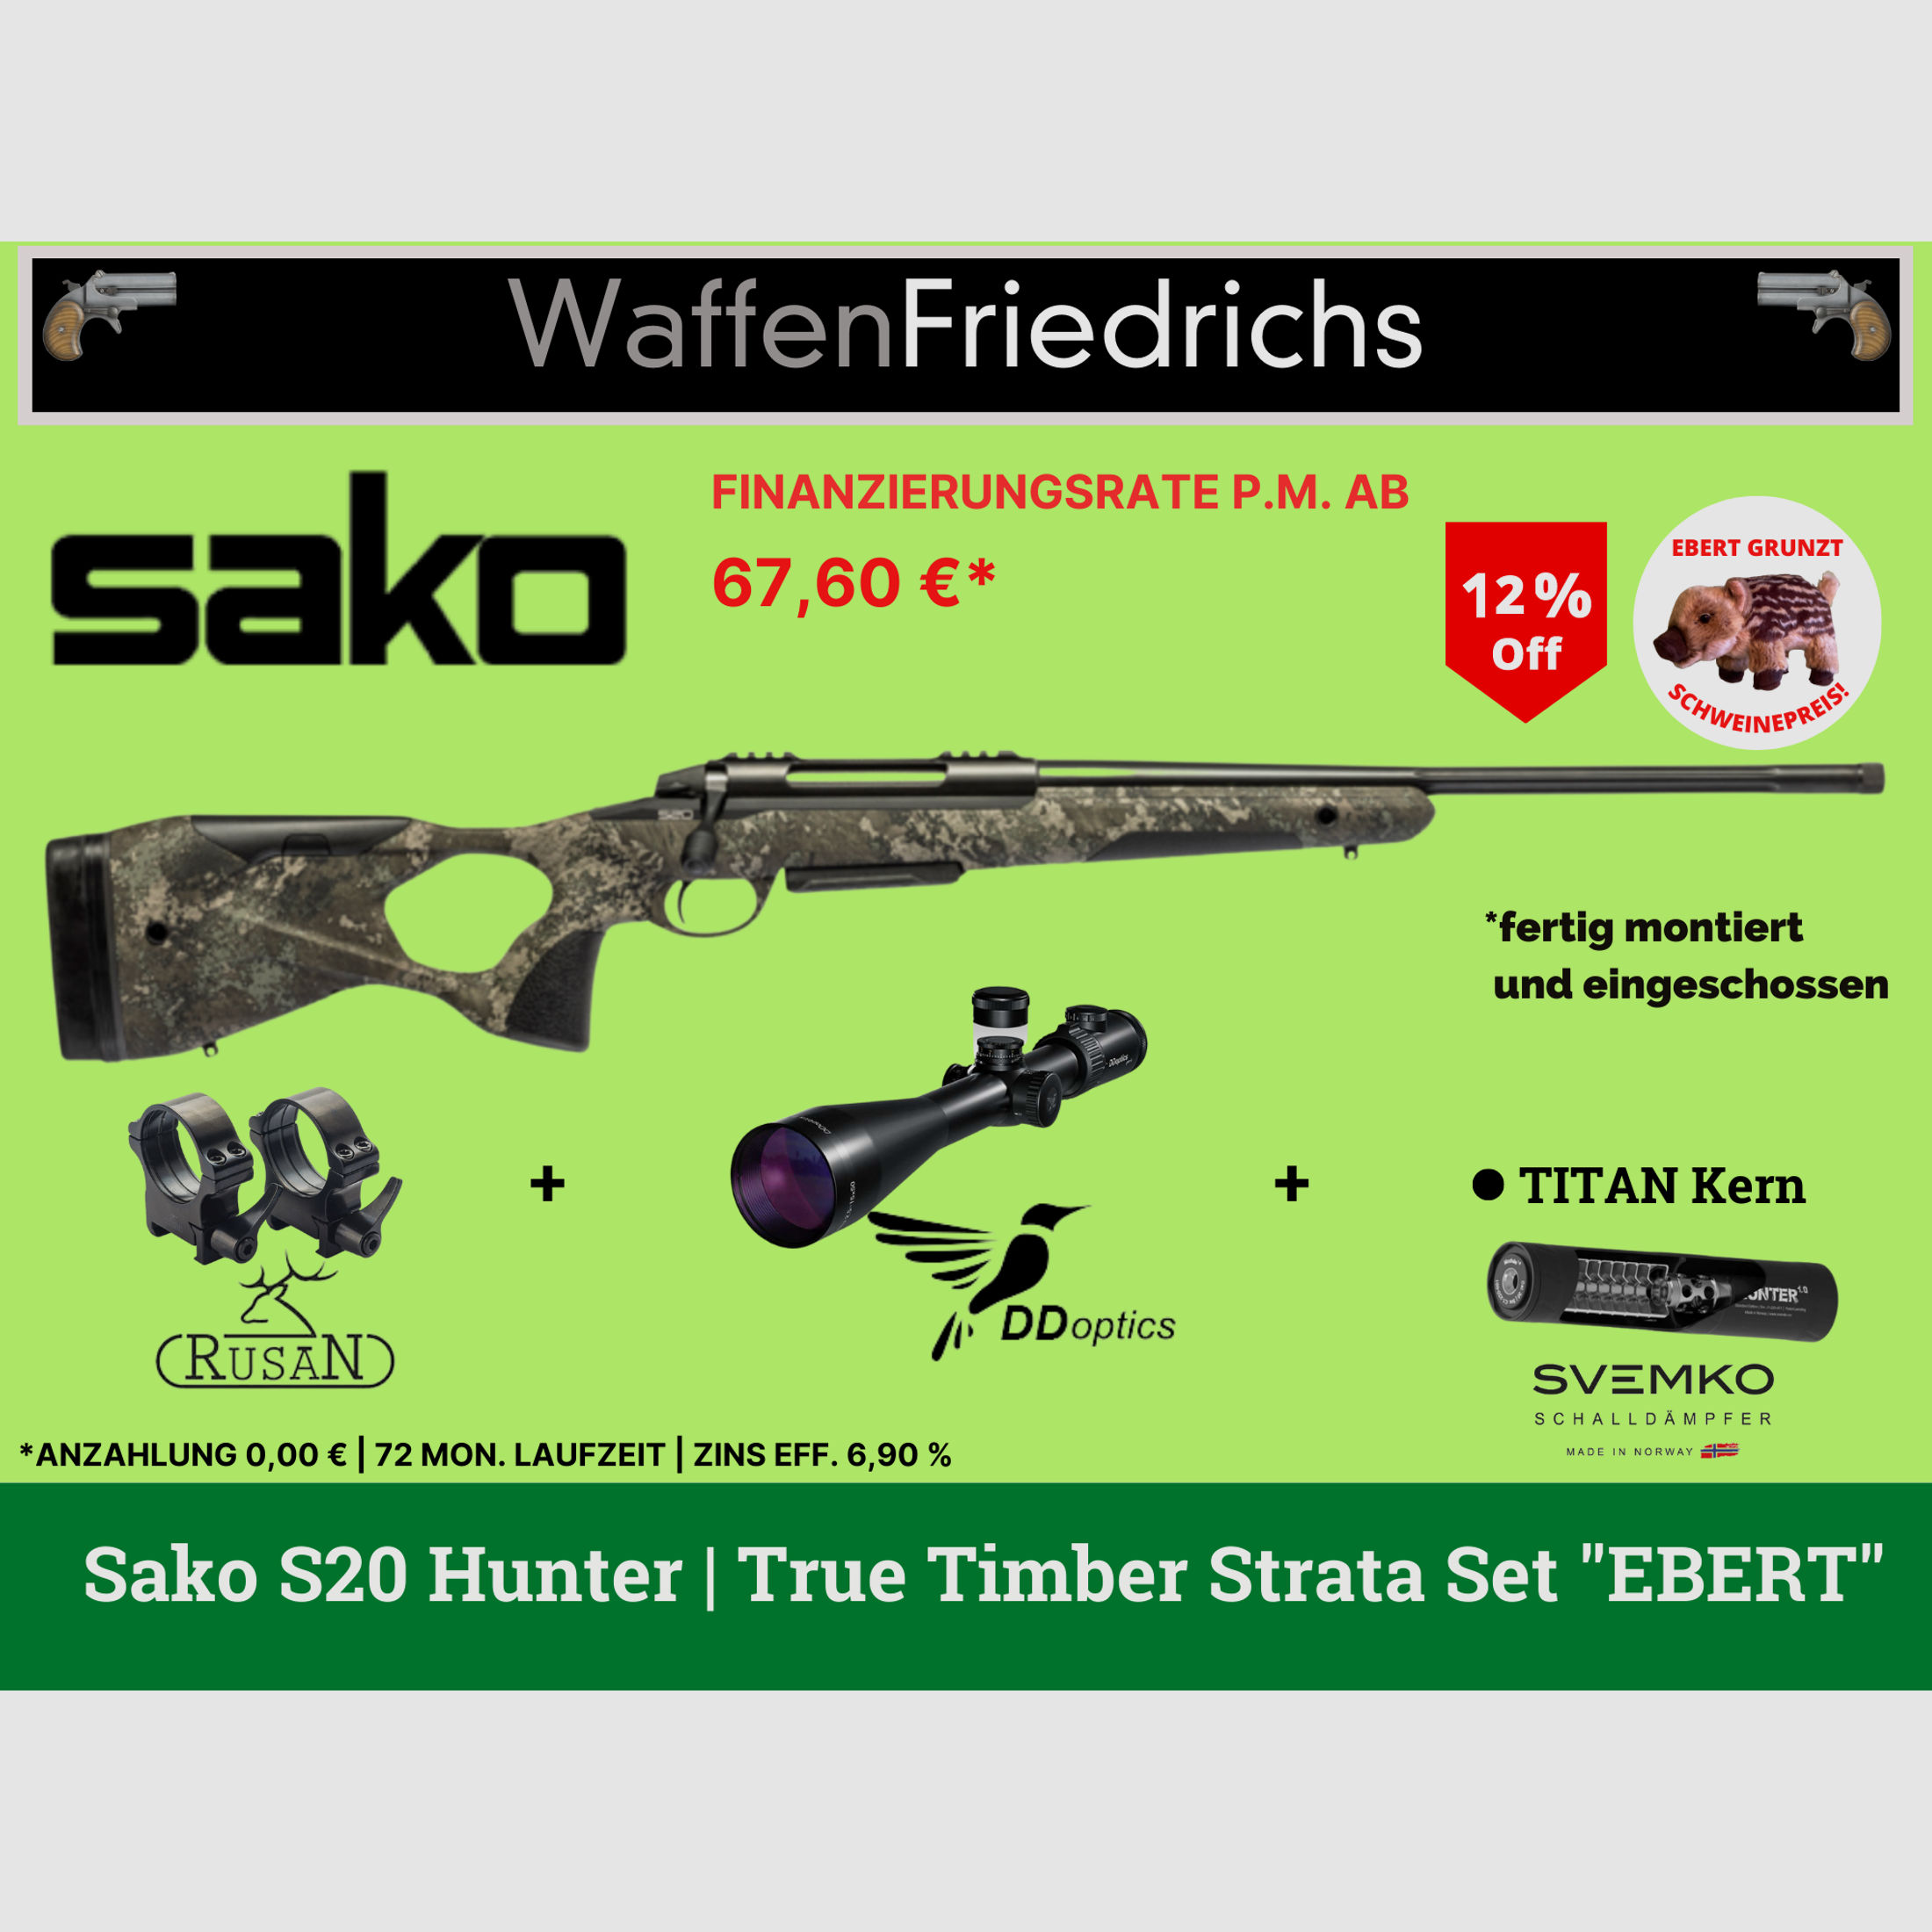 SAKO S20 Hunter True Timber Strata - Komplettangebot Jungjäger - WaffenFriedrichs